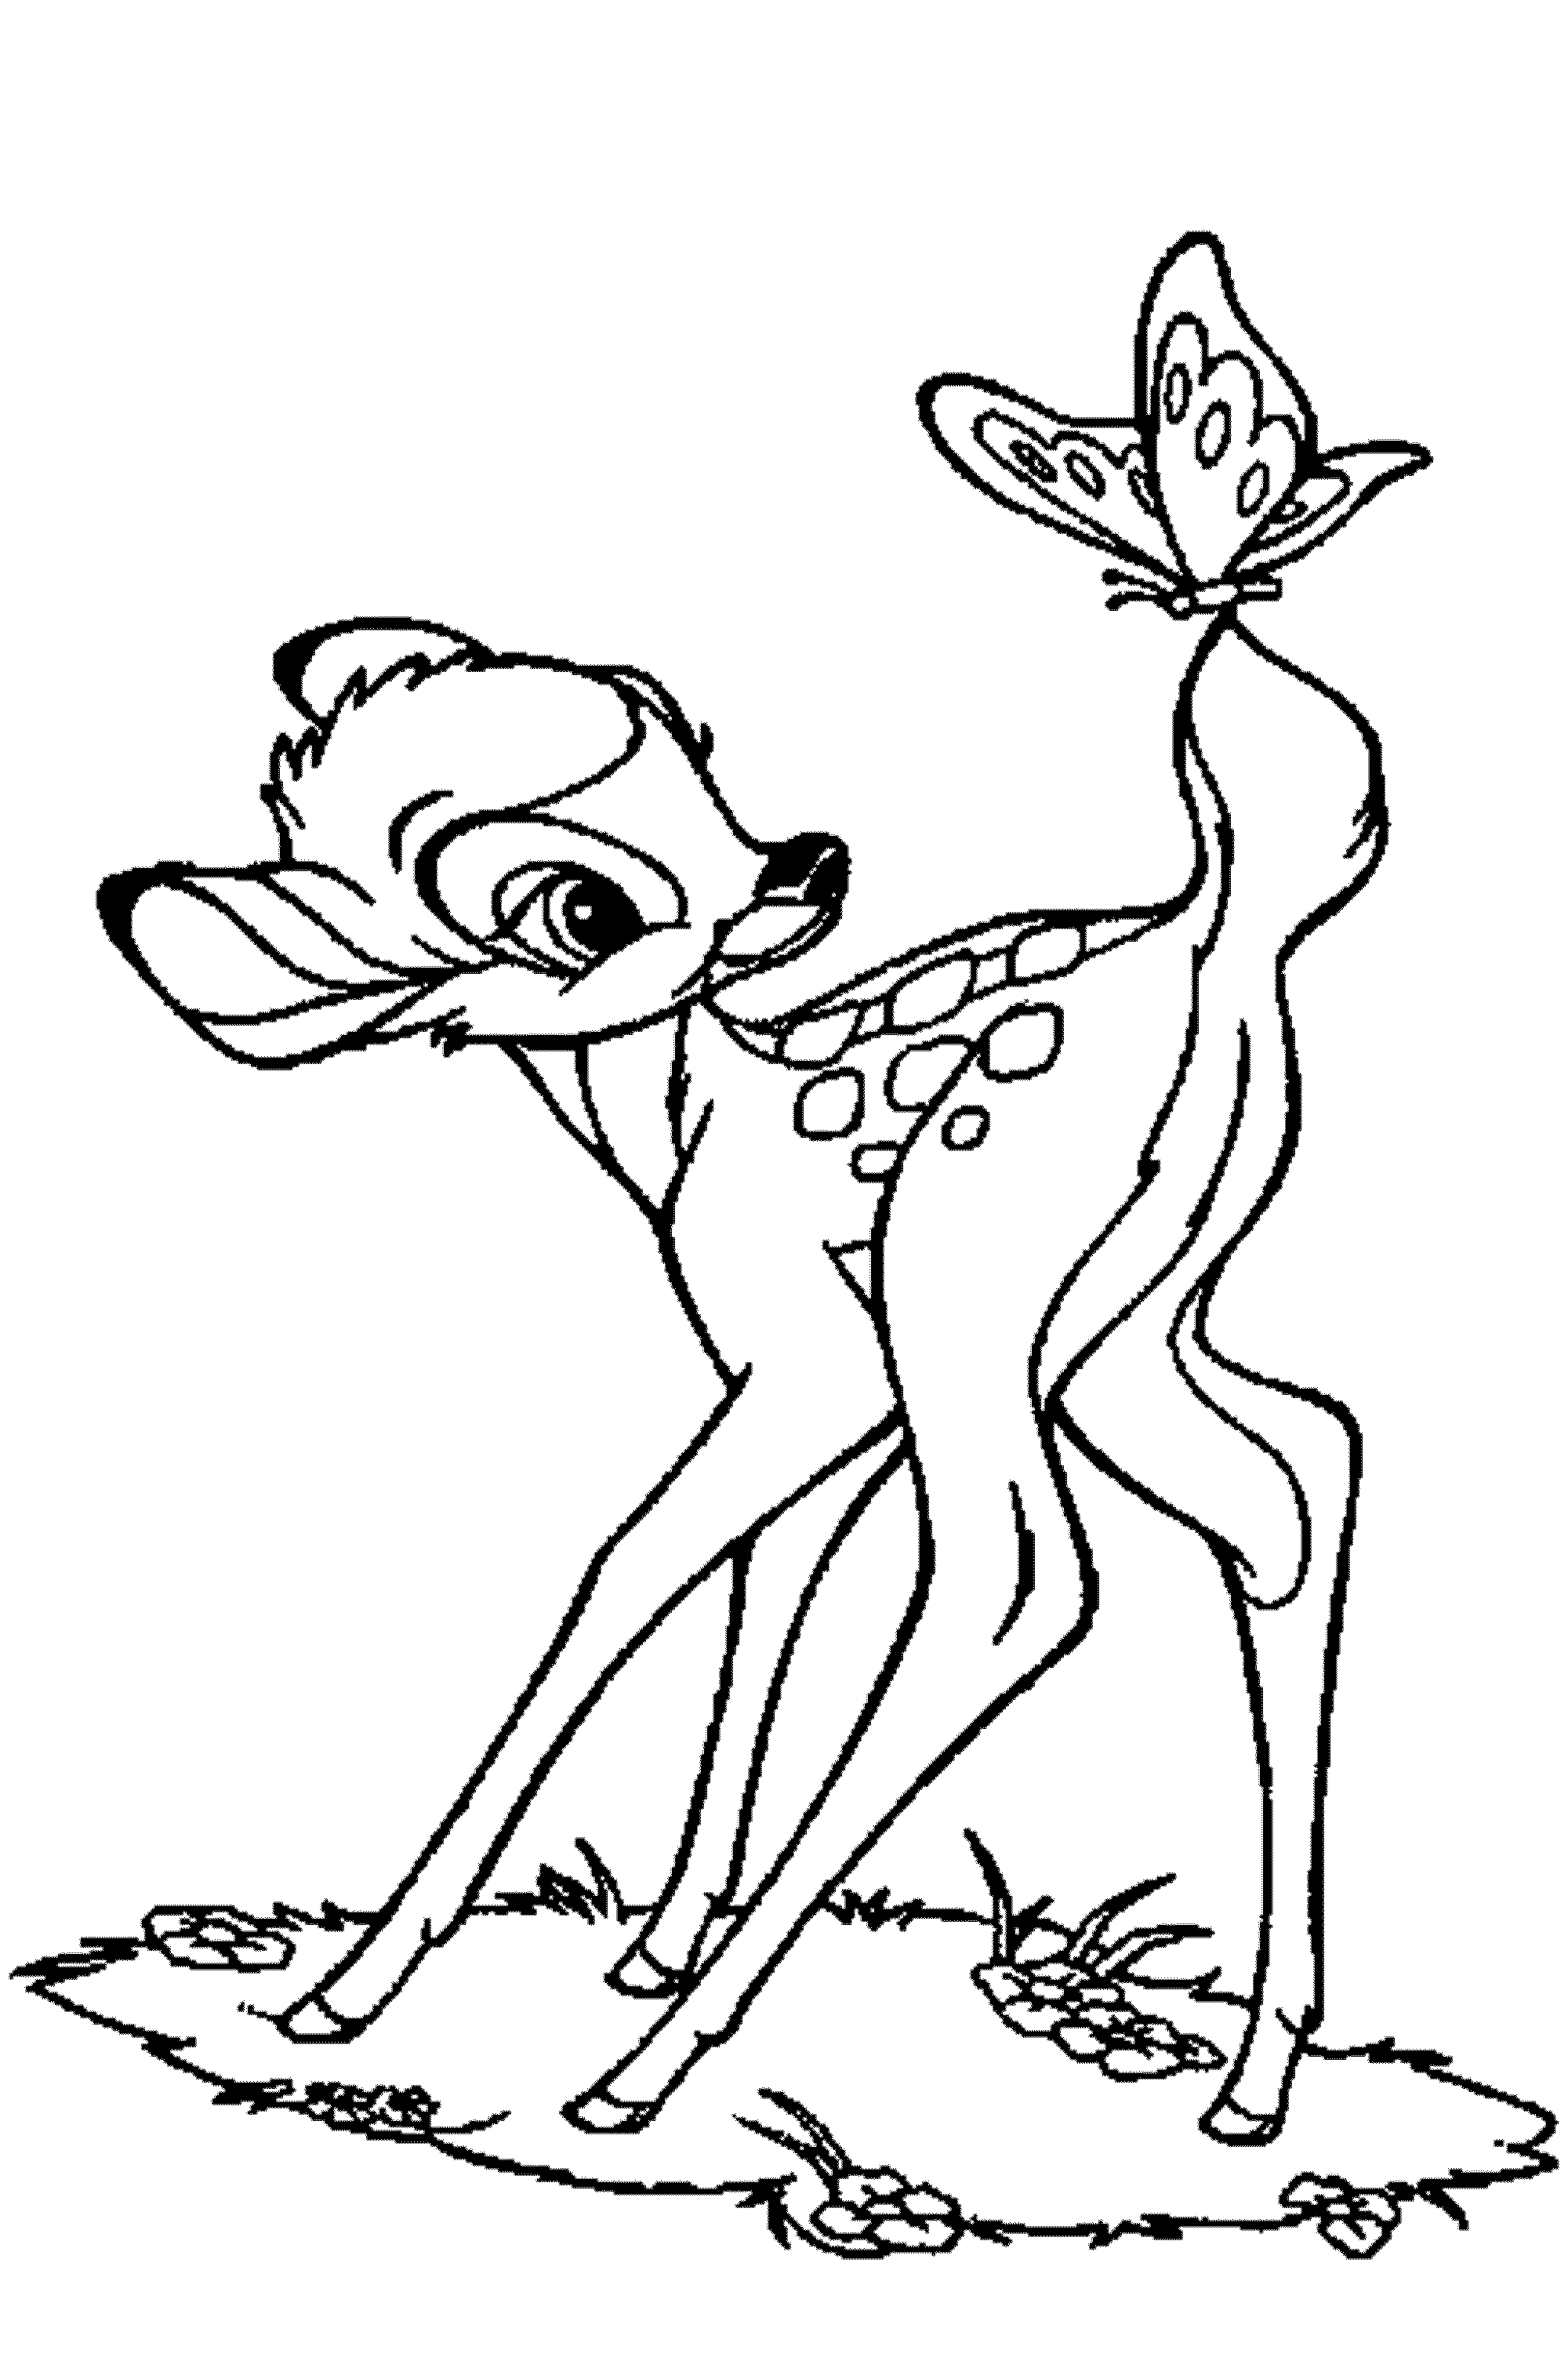 deer coloring page free printable deer coloring pages for kids page deer coloring 